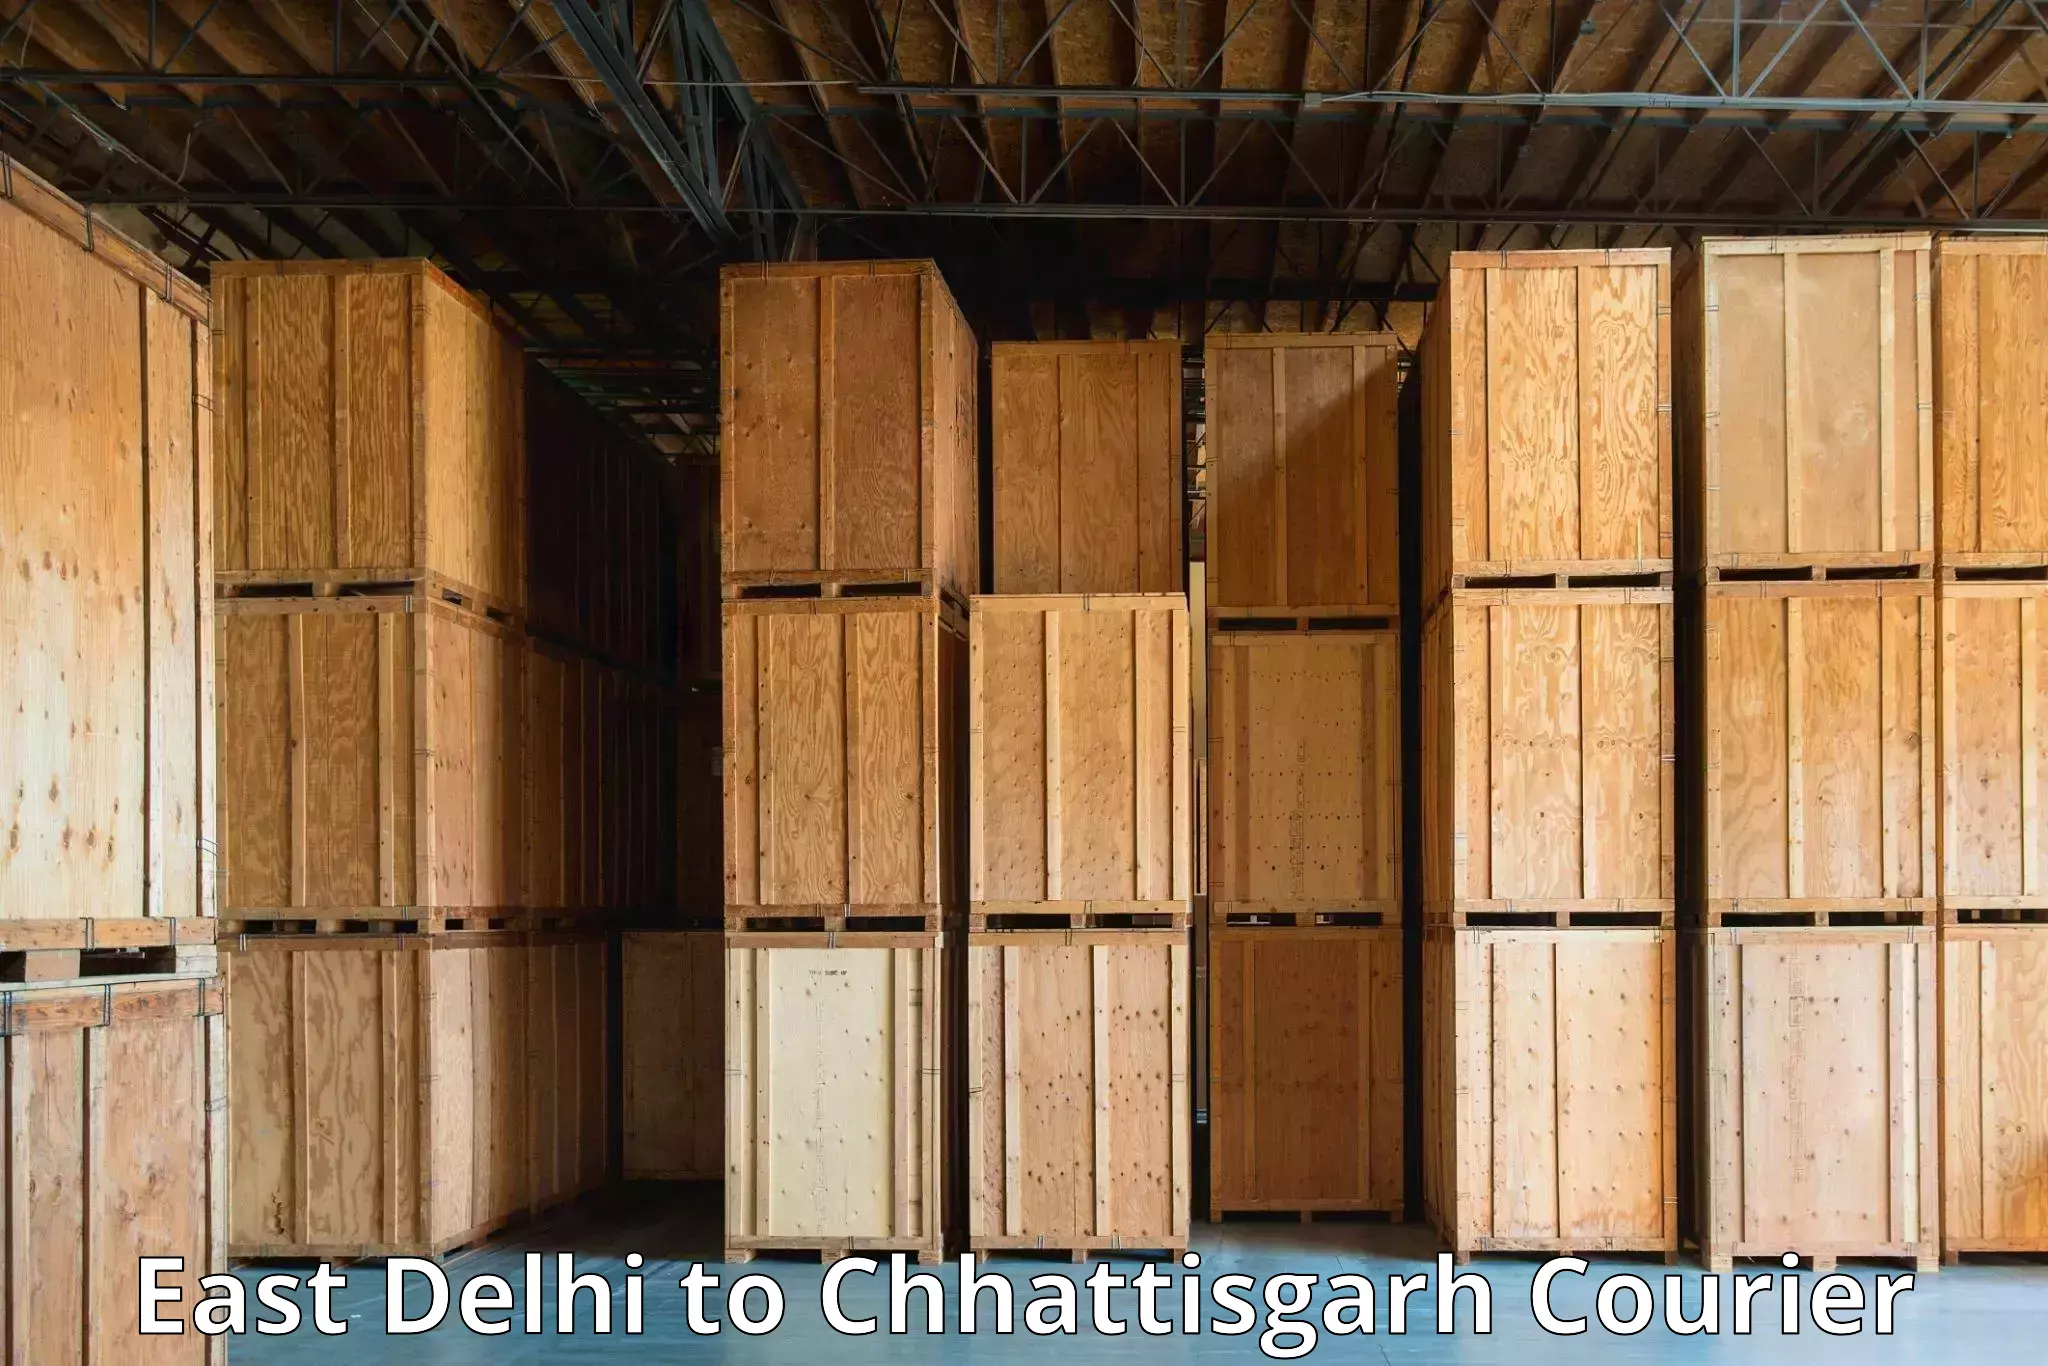 Multi-service courier options East Delhi to Patna Chhattisgarh